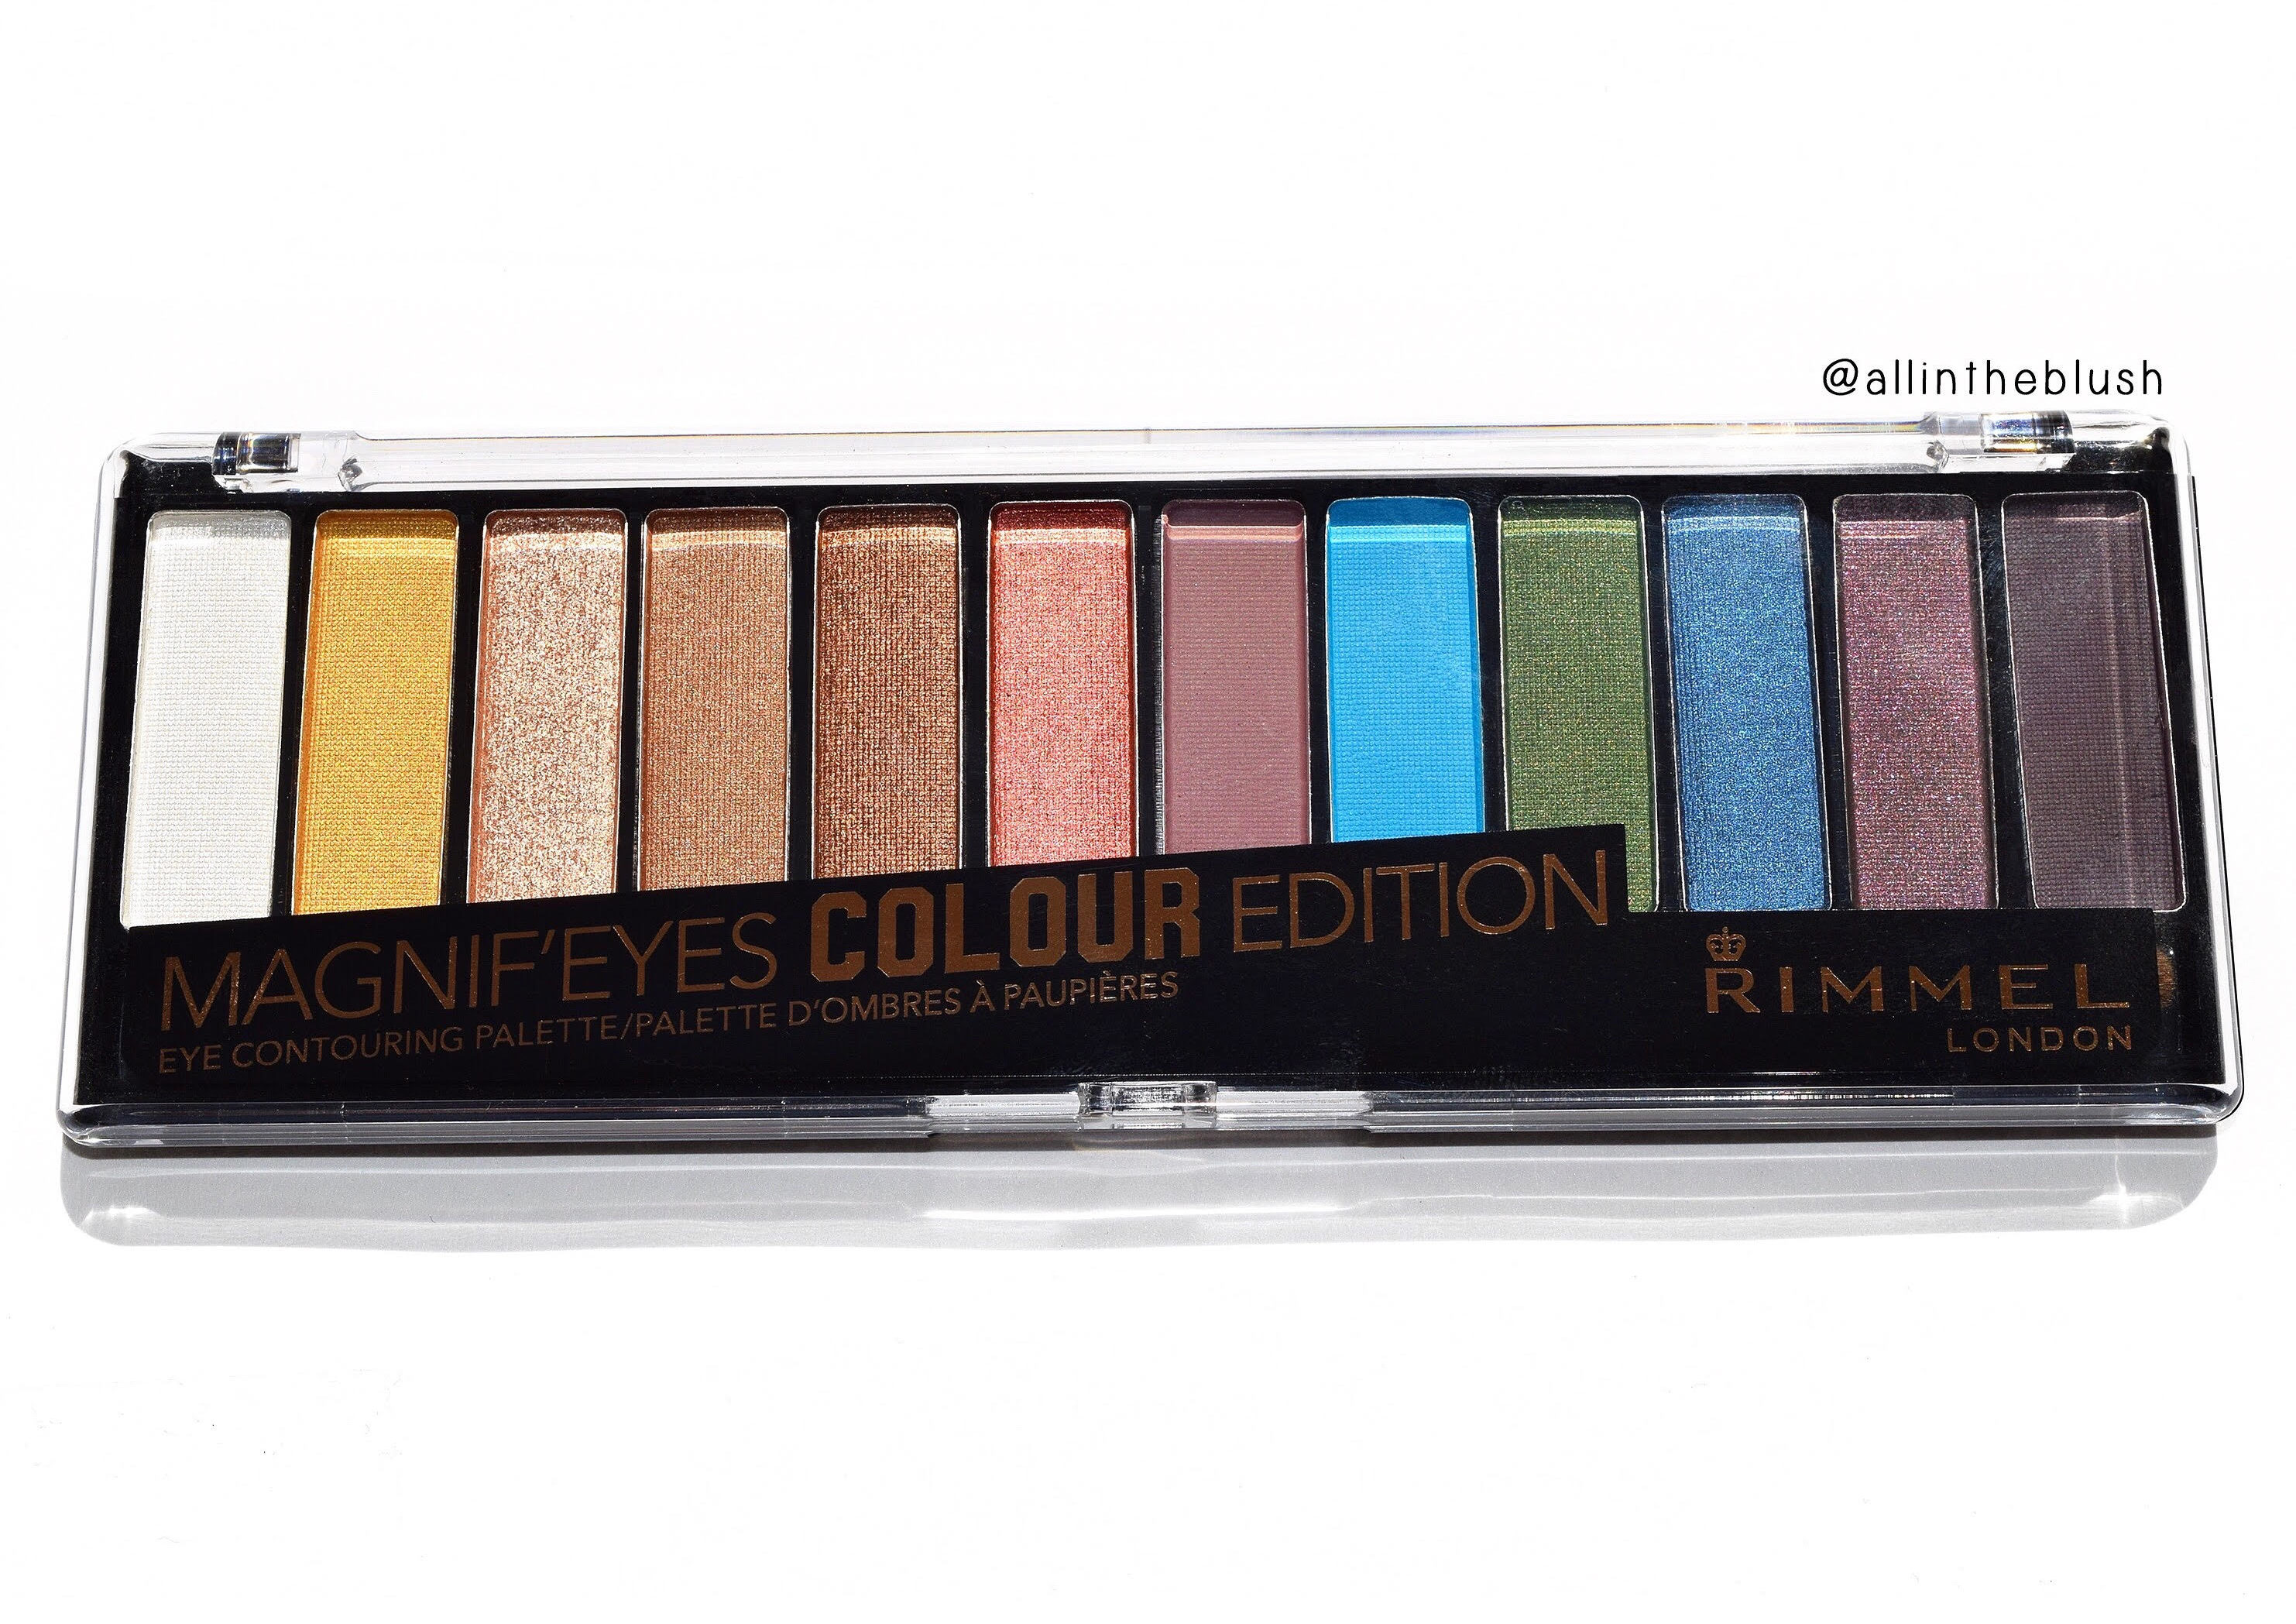 Rimmel London Magnif'Eyes Palette Colour Edition Review